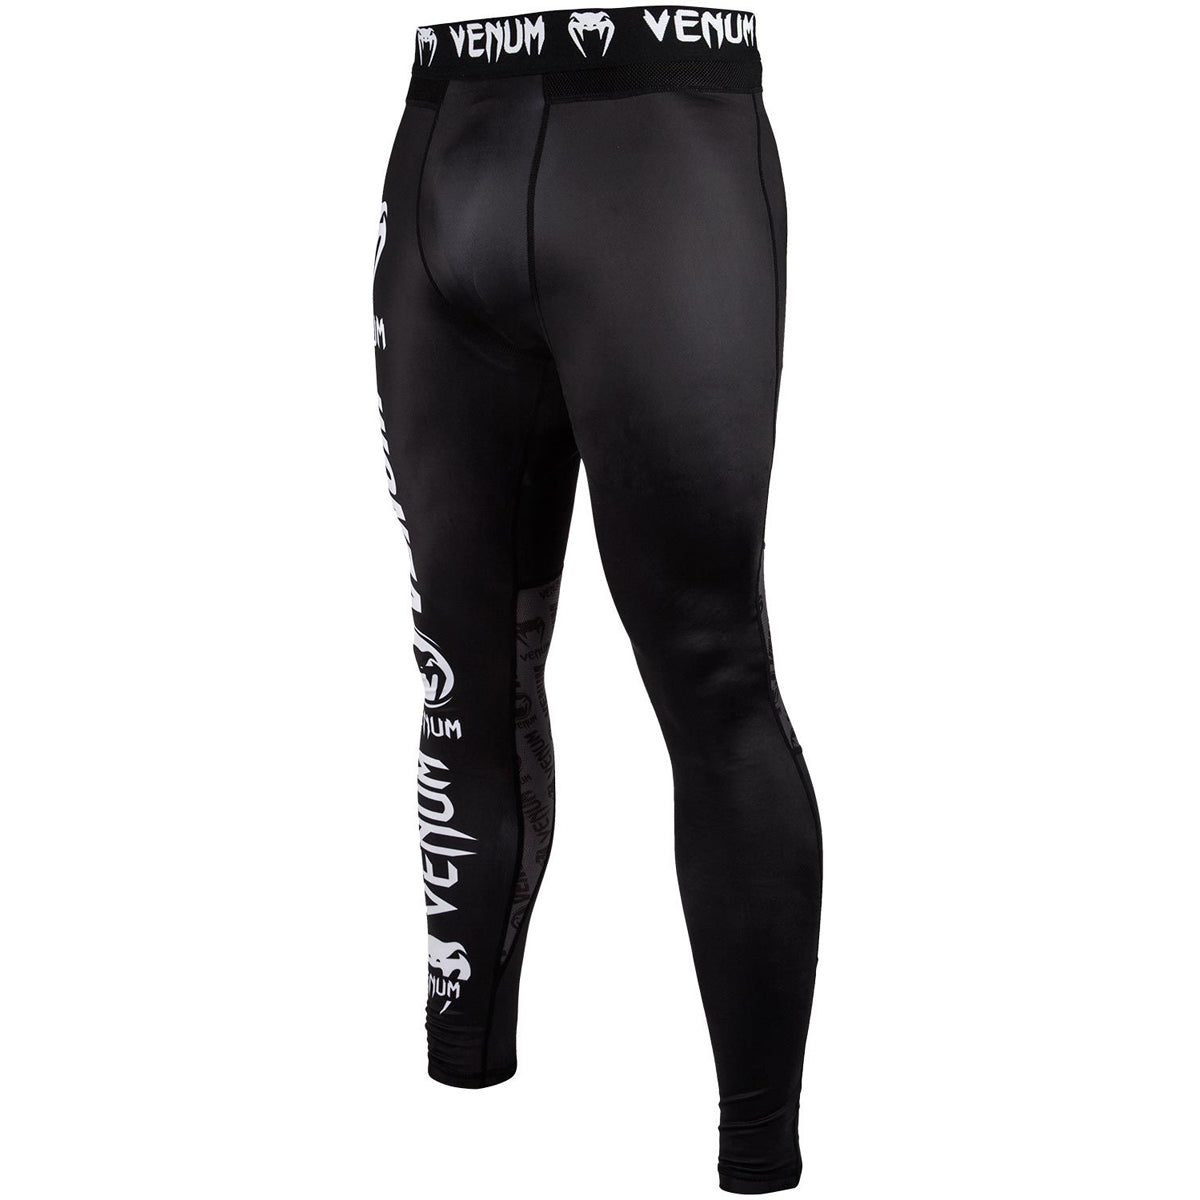 Venum Logos MMA Compression Spats - Black/White Venum